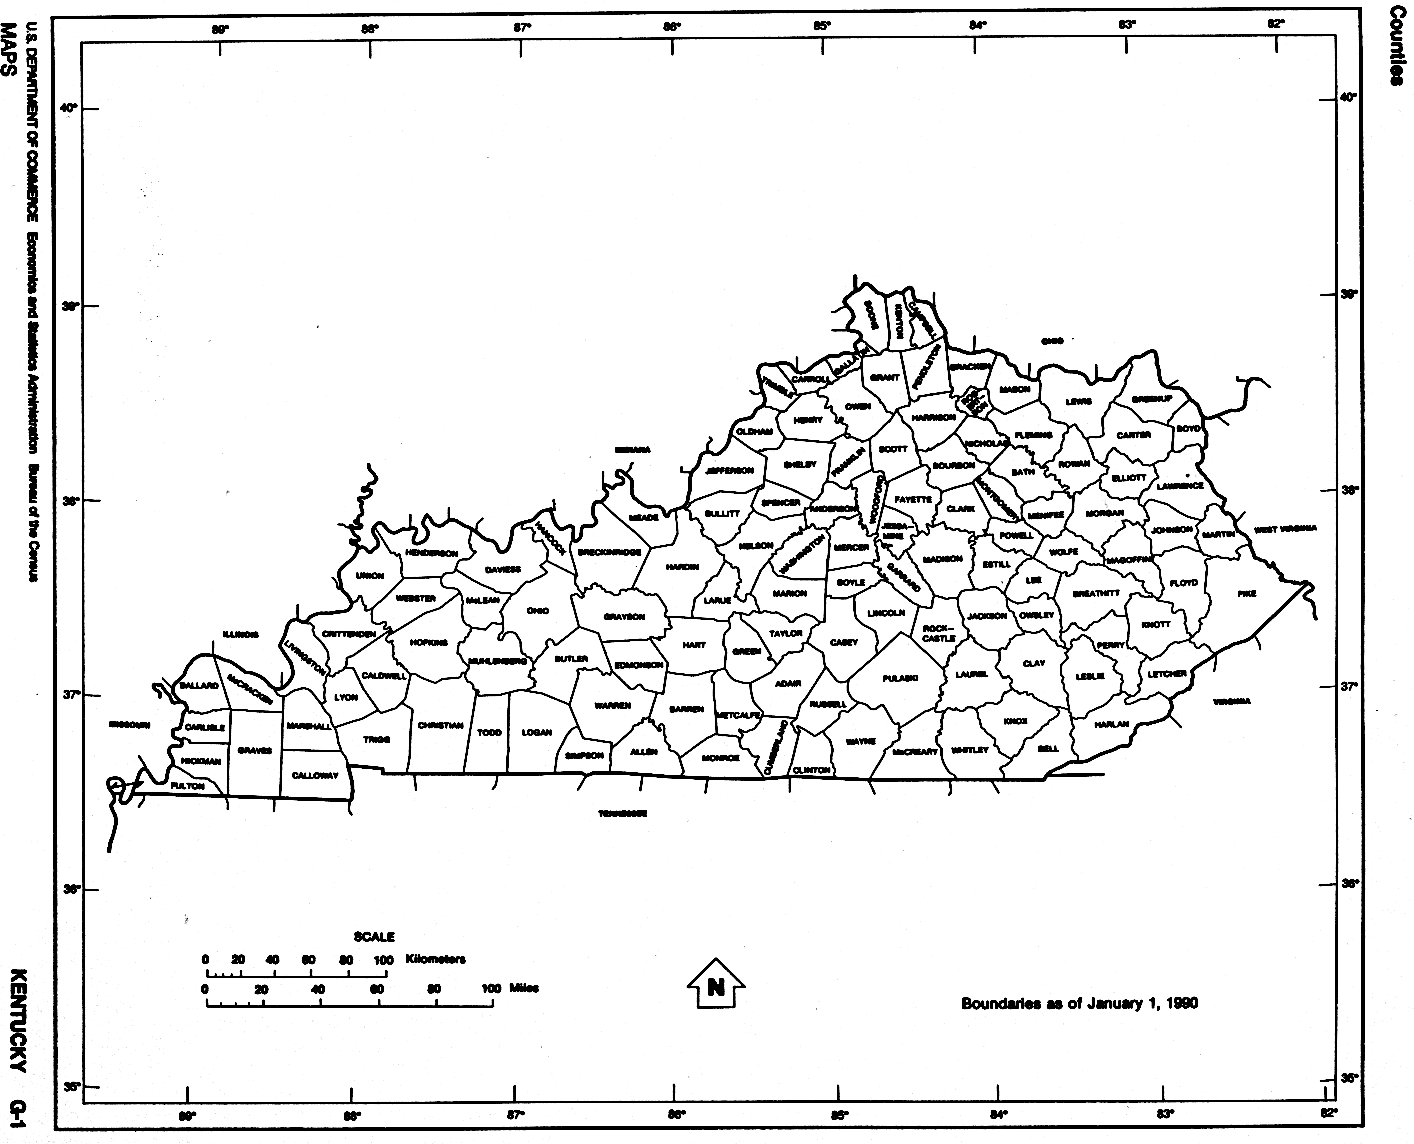 Kentucky Map